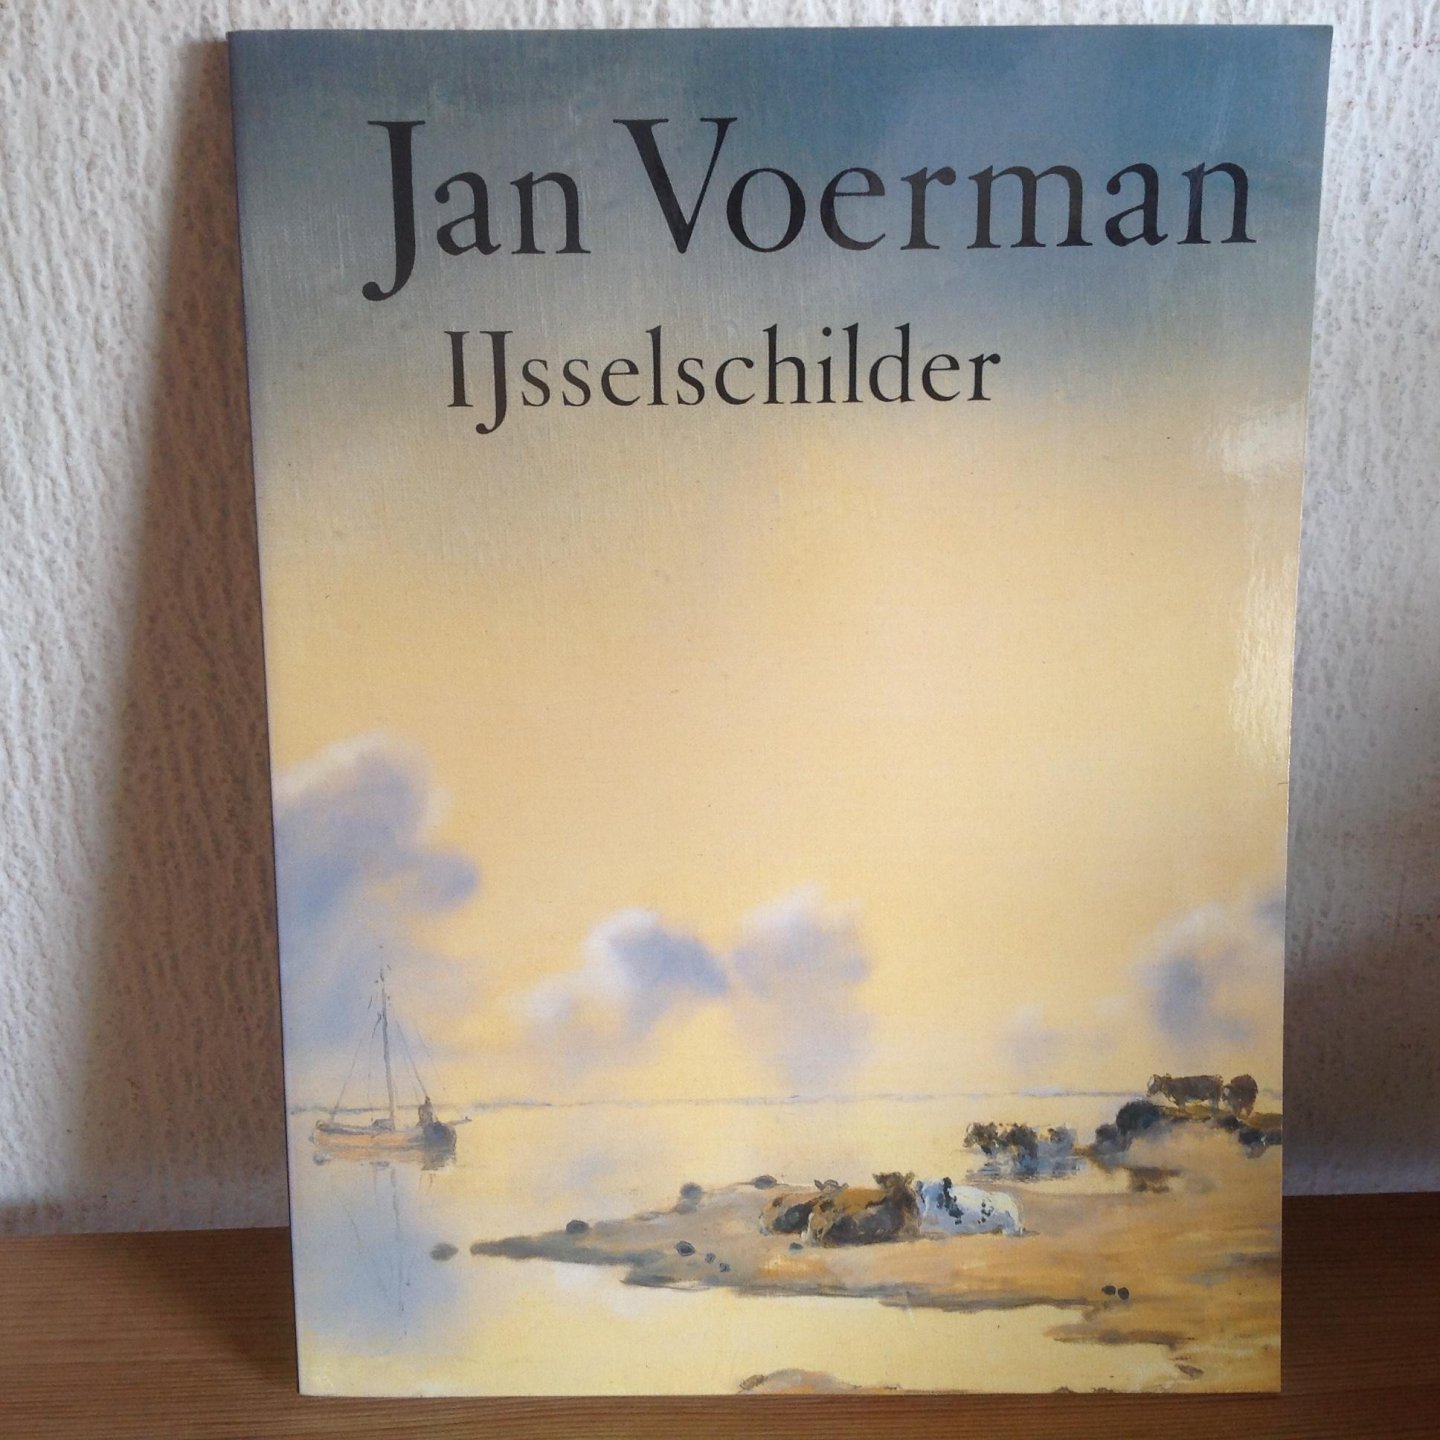 Wagner, A. - Jan Voerman, IJsselschilder